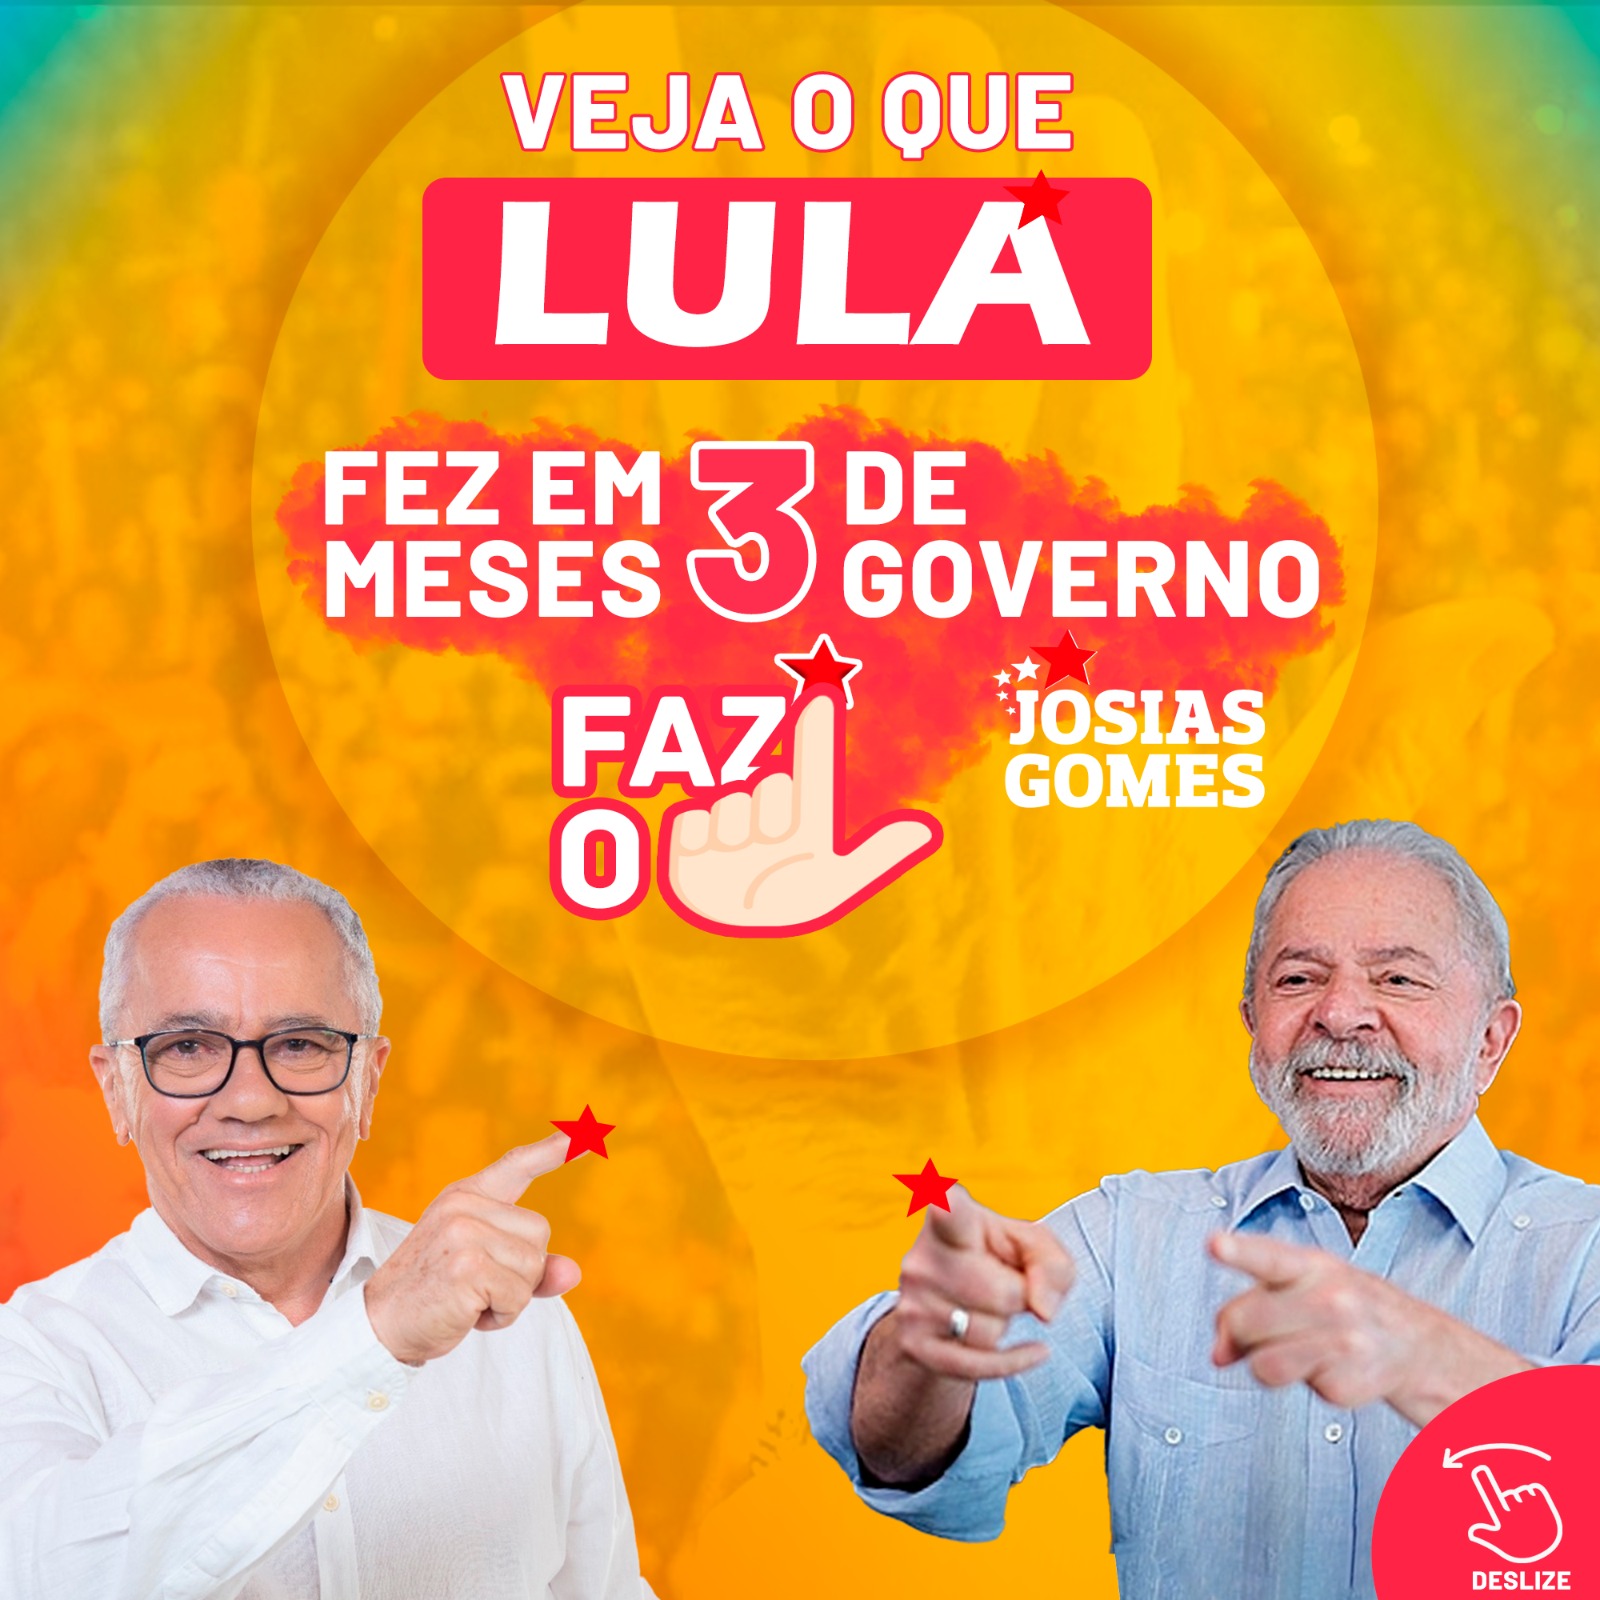 Confira As Principais Ações Em 3 Meses De Governo Lula!